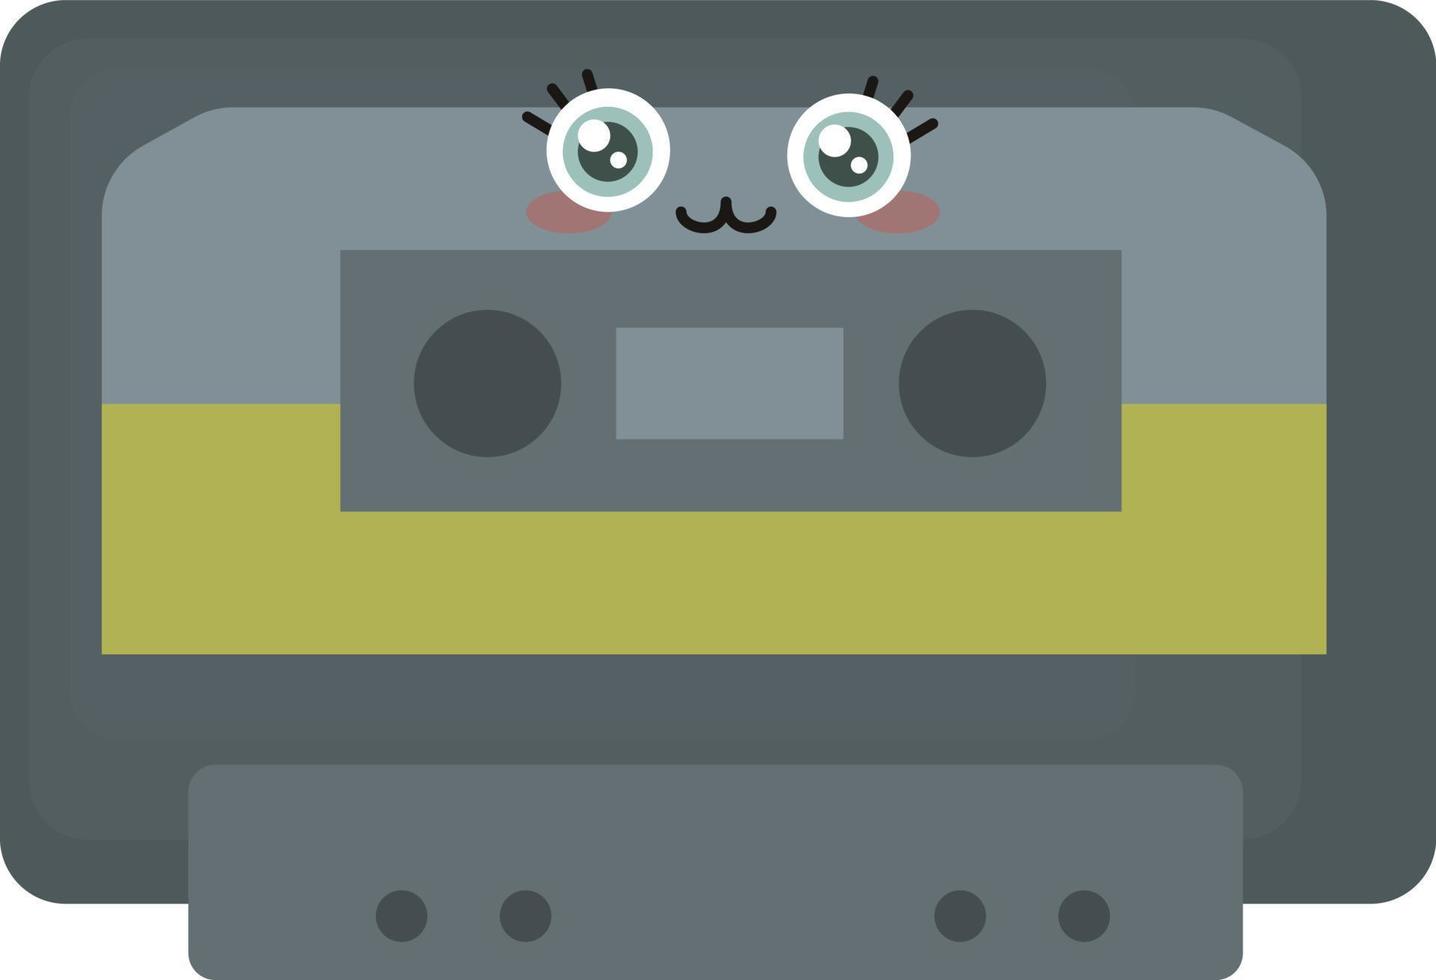 Cute casette tape , illustration, vector on white background